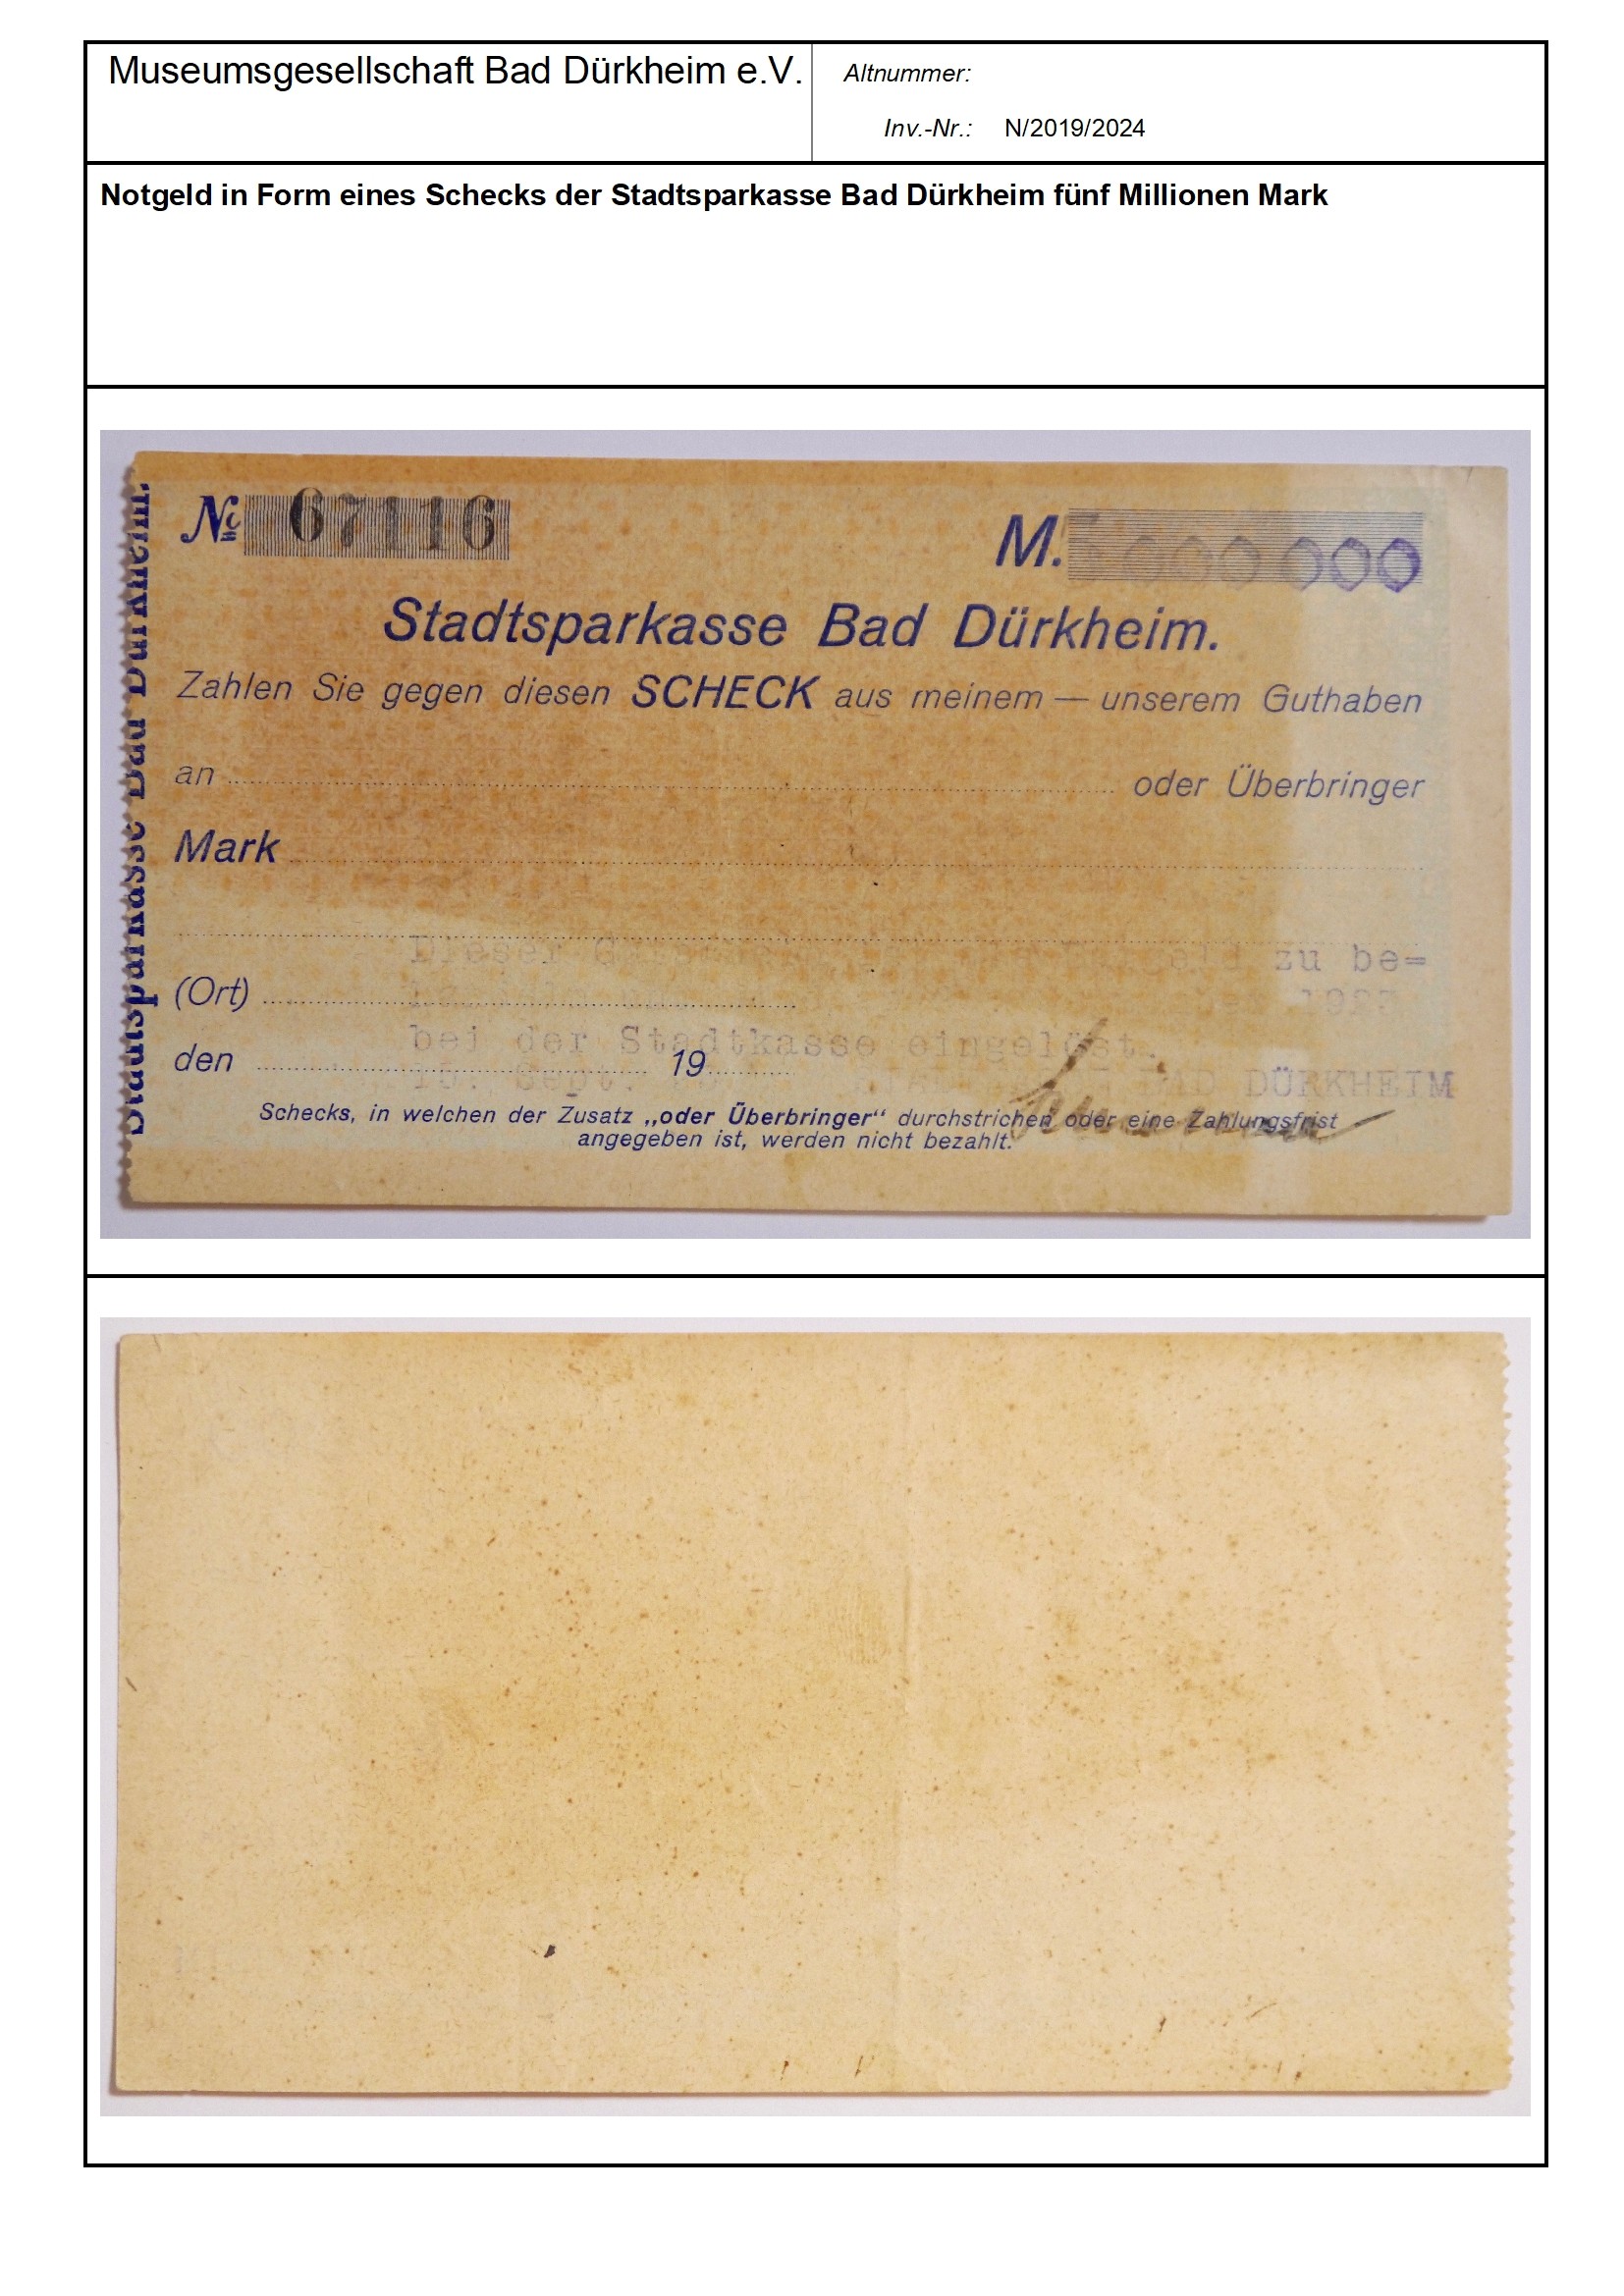 Notgeld in Form eines Schecks der Stadtsparkasse Bad Dürkheim fünf Millionen Mark
Serien-Nummer: No 67116 (Museumsgesellschaft Bad Dürkheim e.V. CC BY-NC-SA)